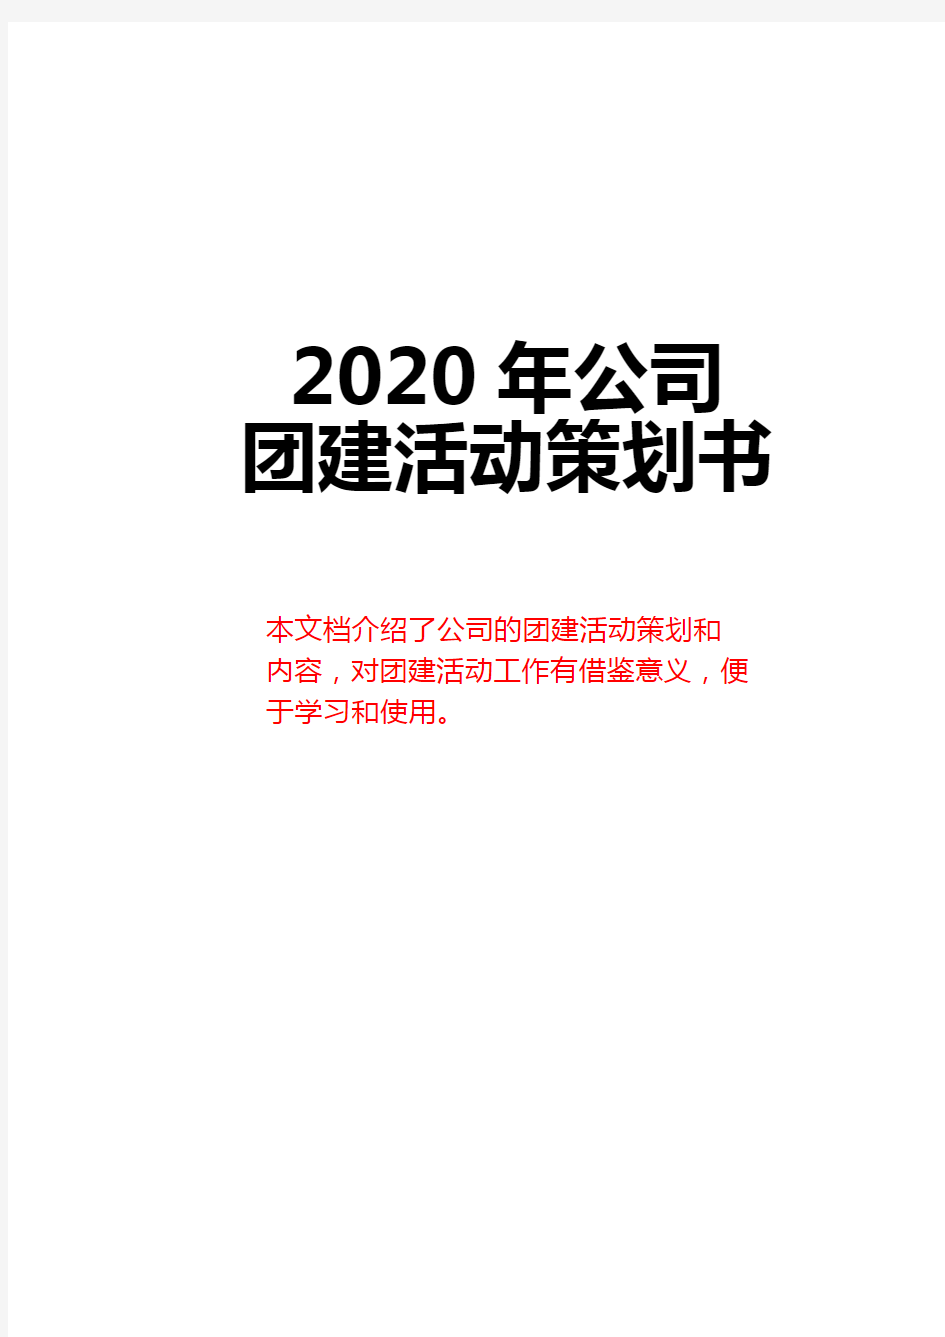 2020年公司团建活动策划书模板